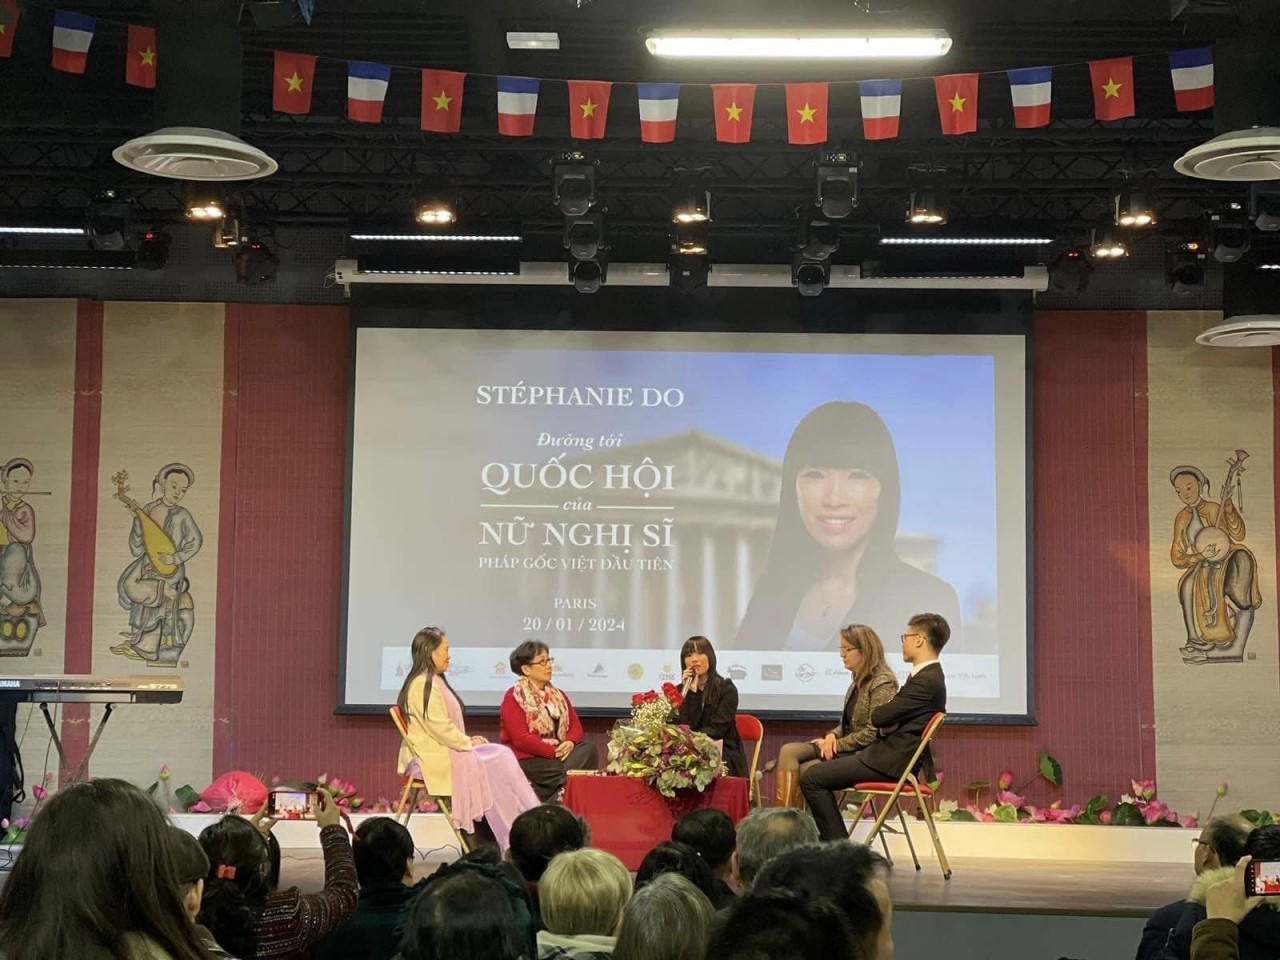 nữ nghị sĩ Quốc hội gốc Việt tại Pháp Stéphanie Đỗ chia sẻ câu chuyện thành công của mình với cộng đồng người Việt tại Pháp.